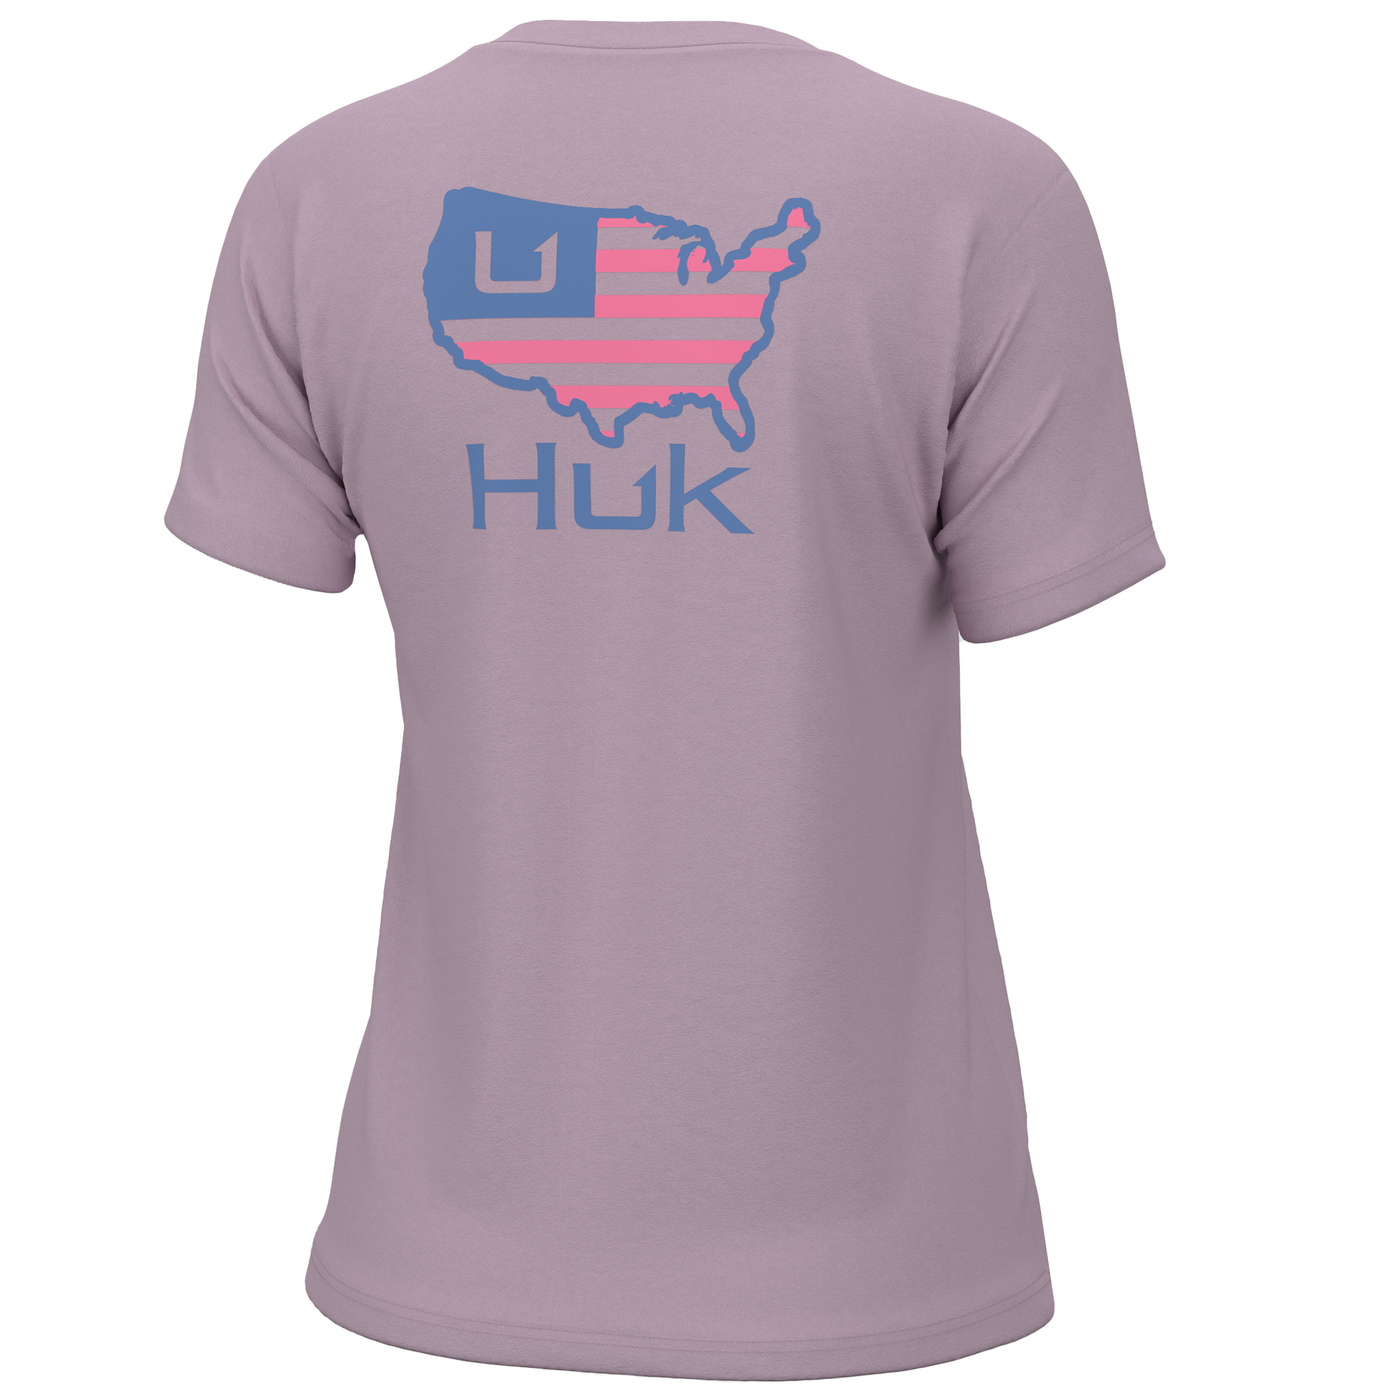 Huk Womens American Huk Tee